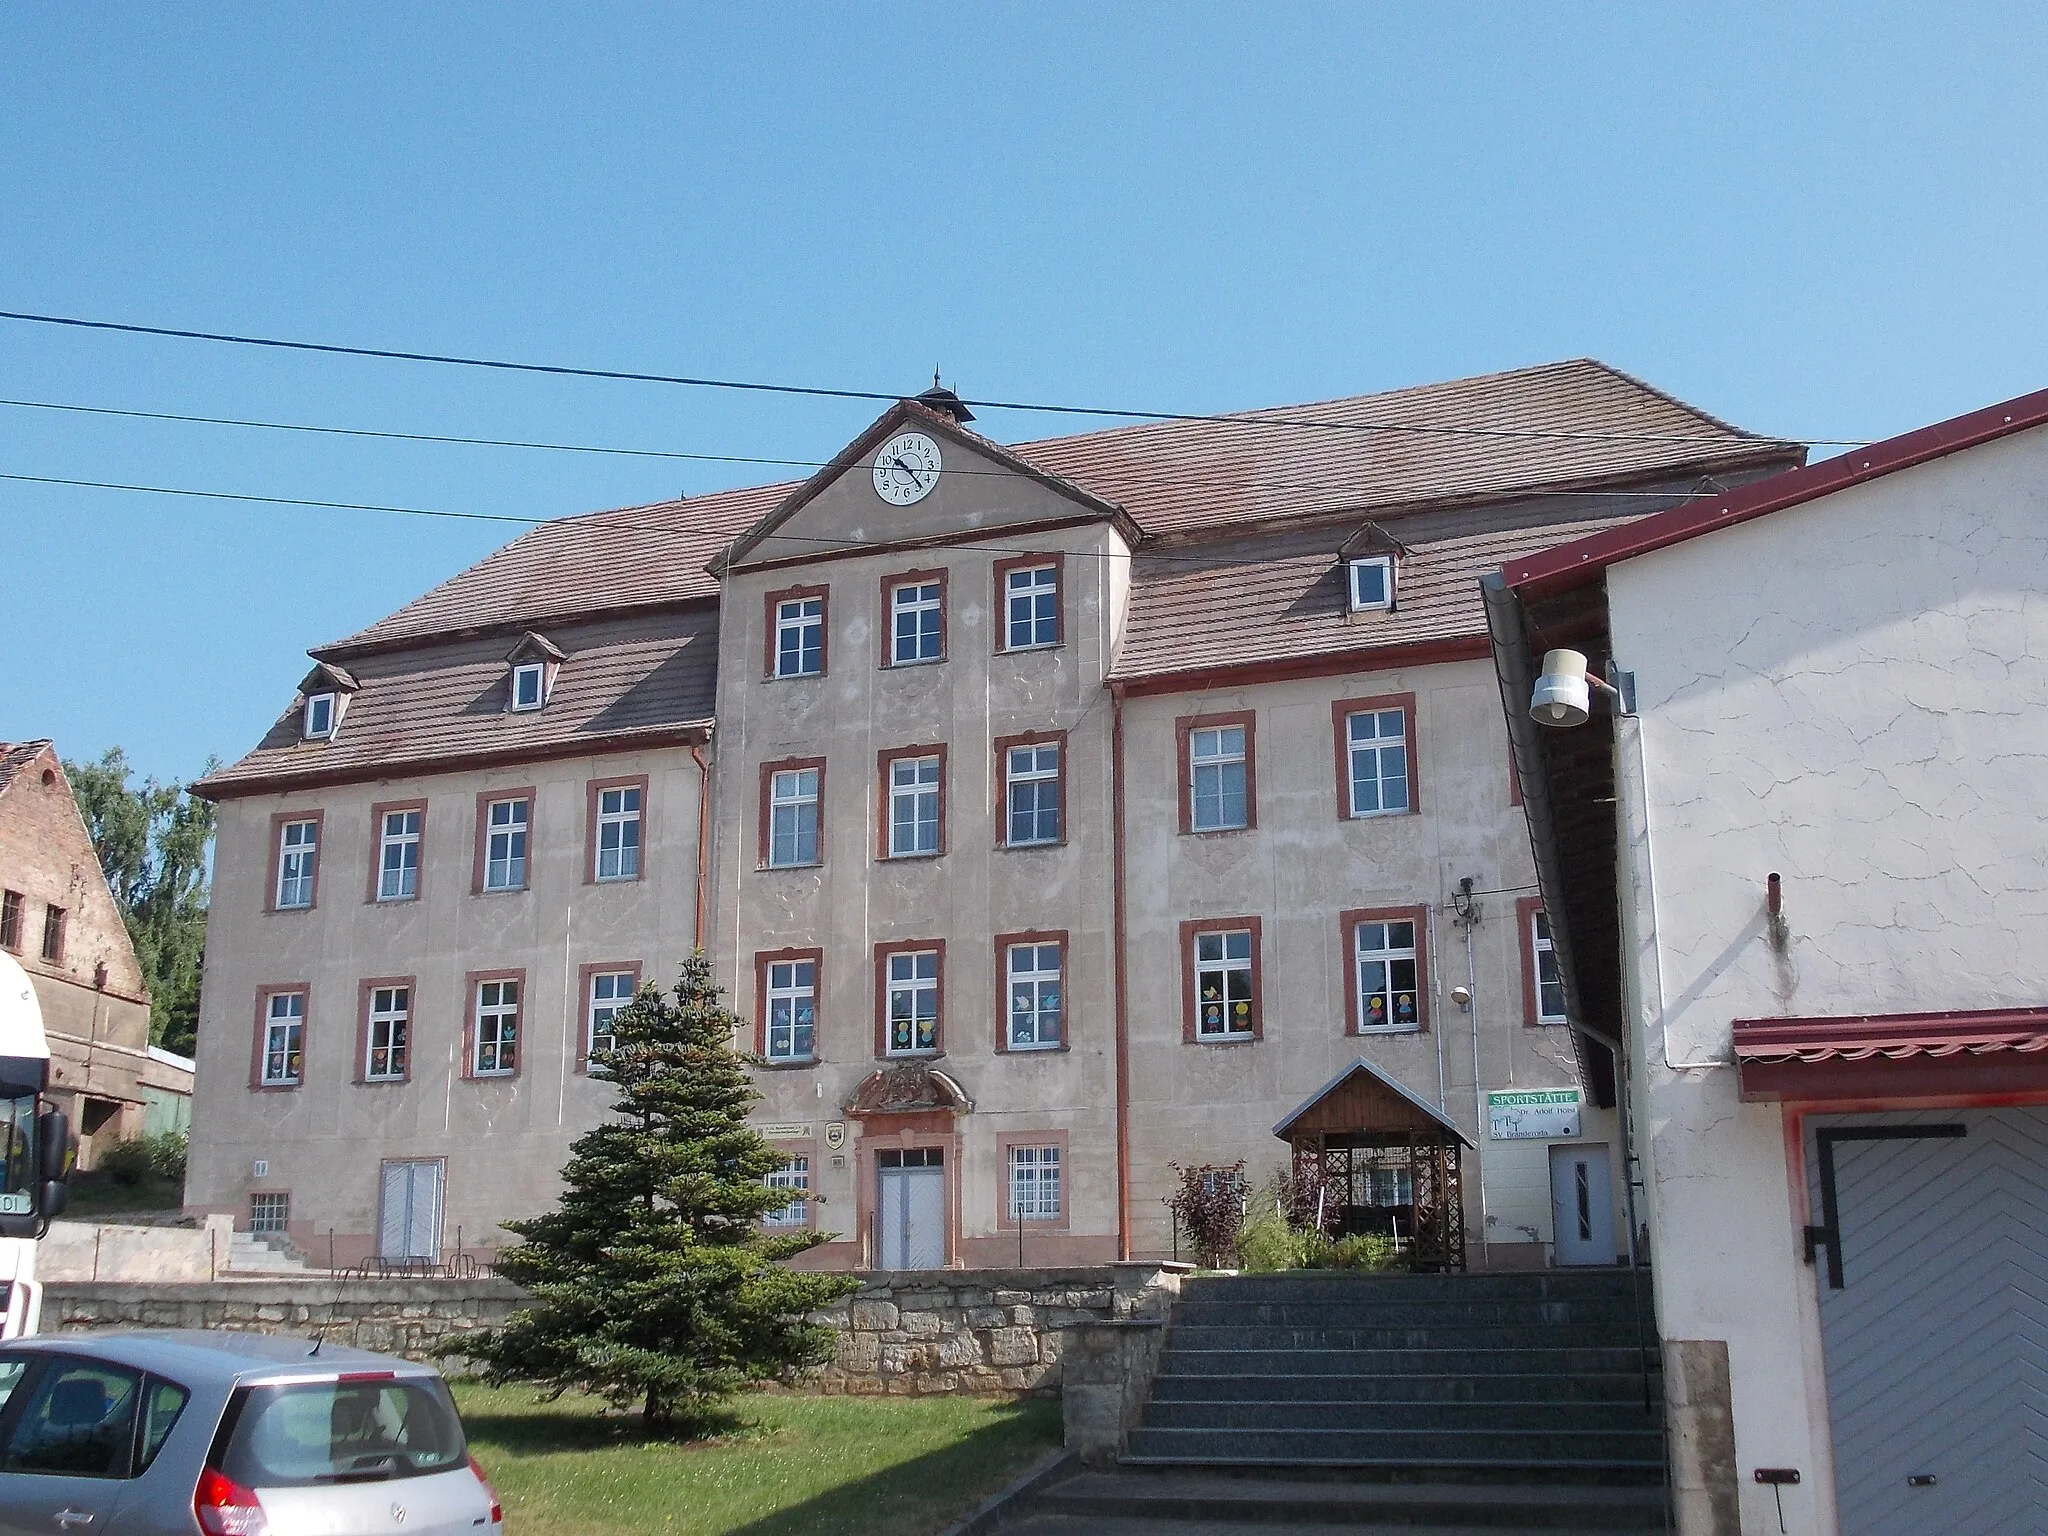 Photo showing: Manor house of Branderoda estate (Mücheln/Geiseltal, district: Saalekreis, Saxony-Anhalt)